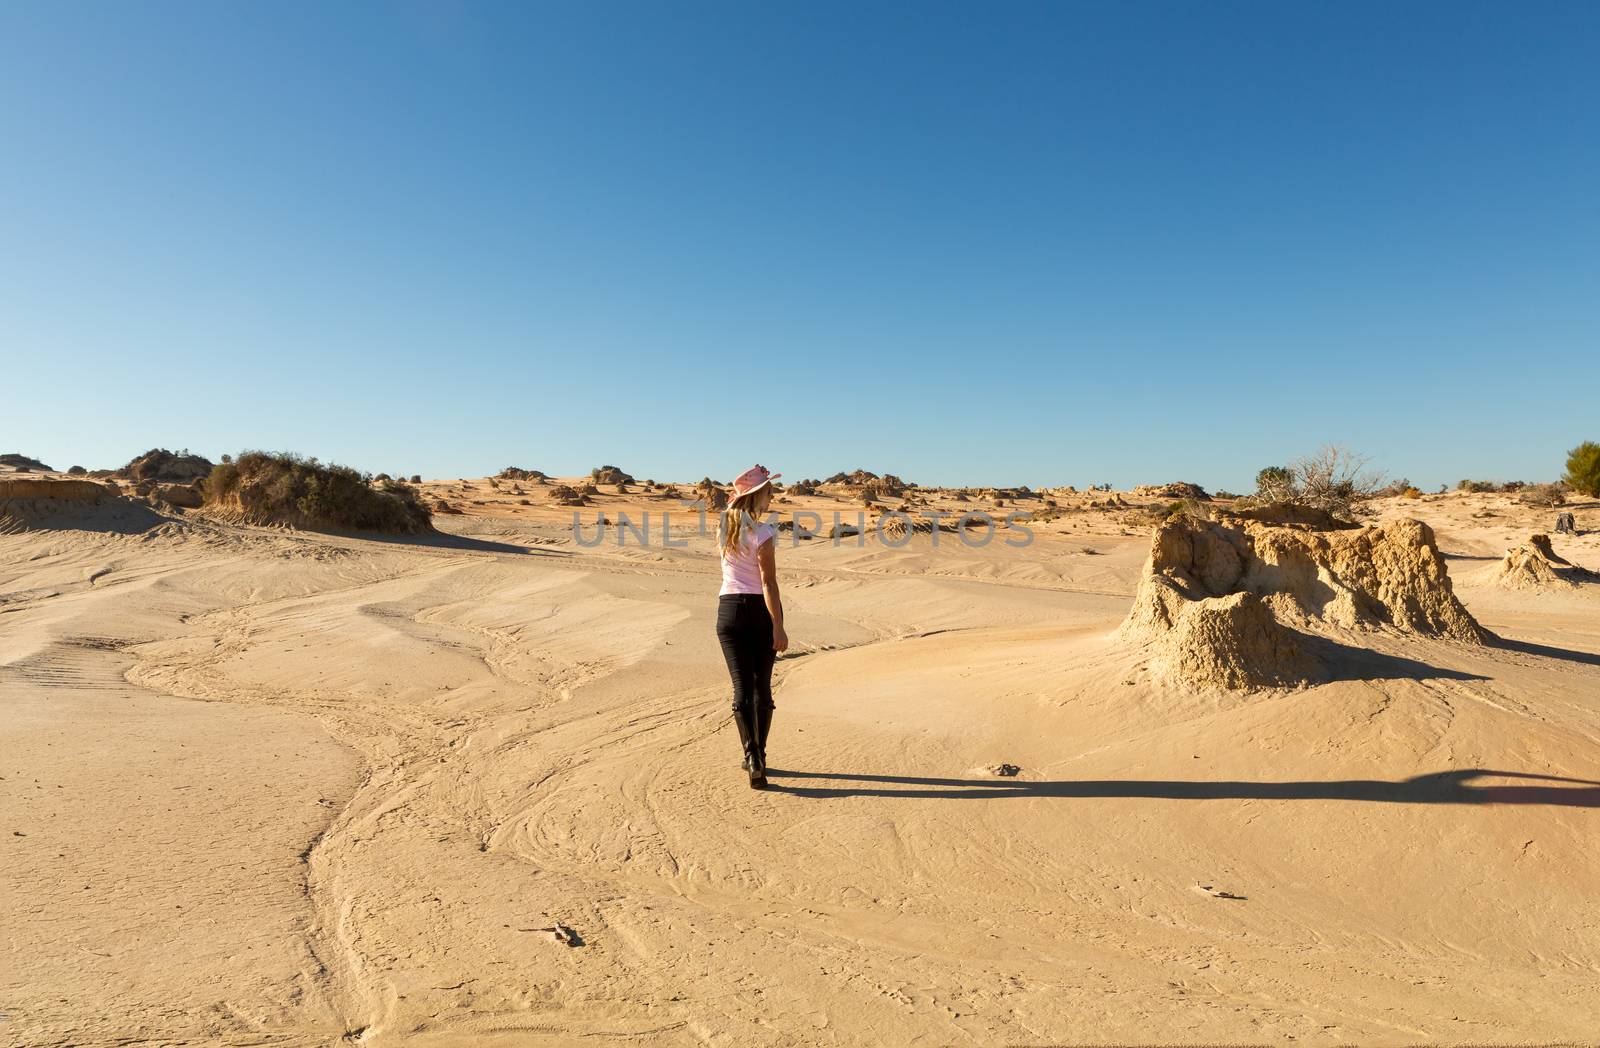 Woman in a desert landscape in outback Australia by lovleah